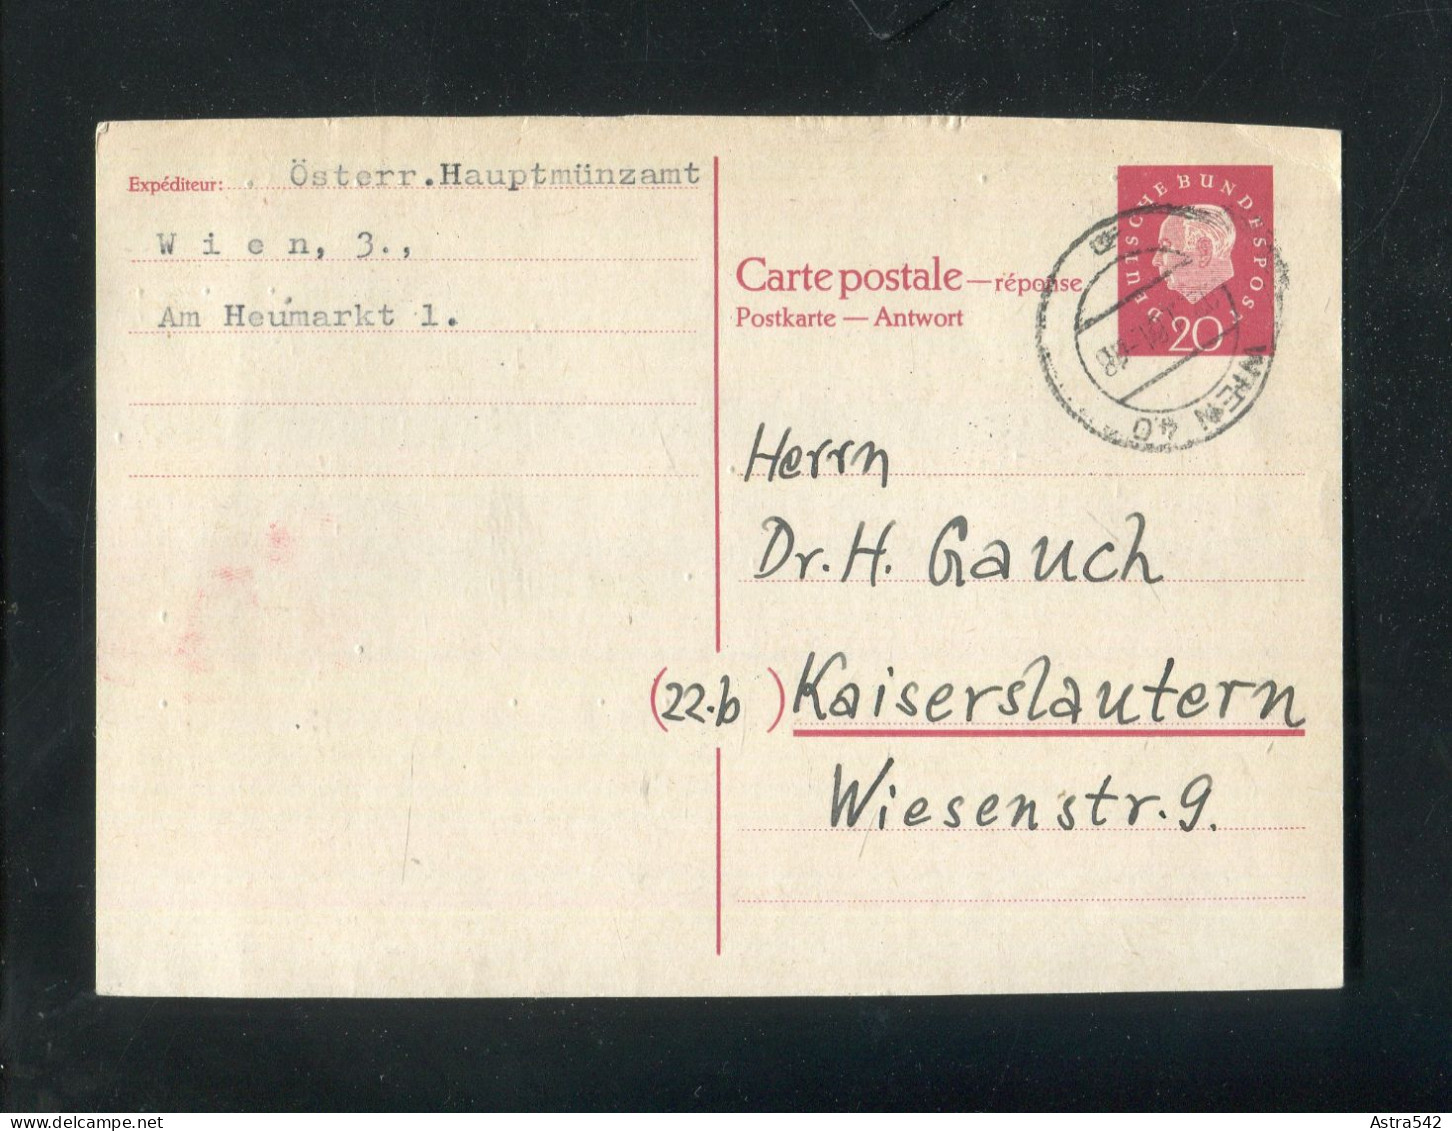 "BUNDESREPUBLIK DEUTSCHLAND" 1961, Postkarte (Antwortkarte) Mi. P 40A Stegstempel "WIEN" (4850) - Postcards - Used